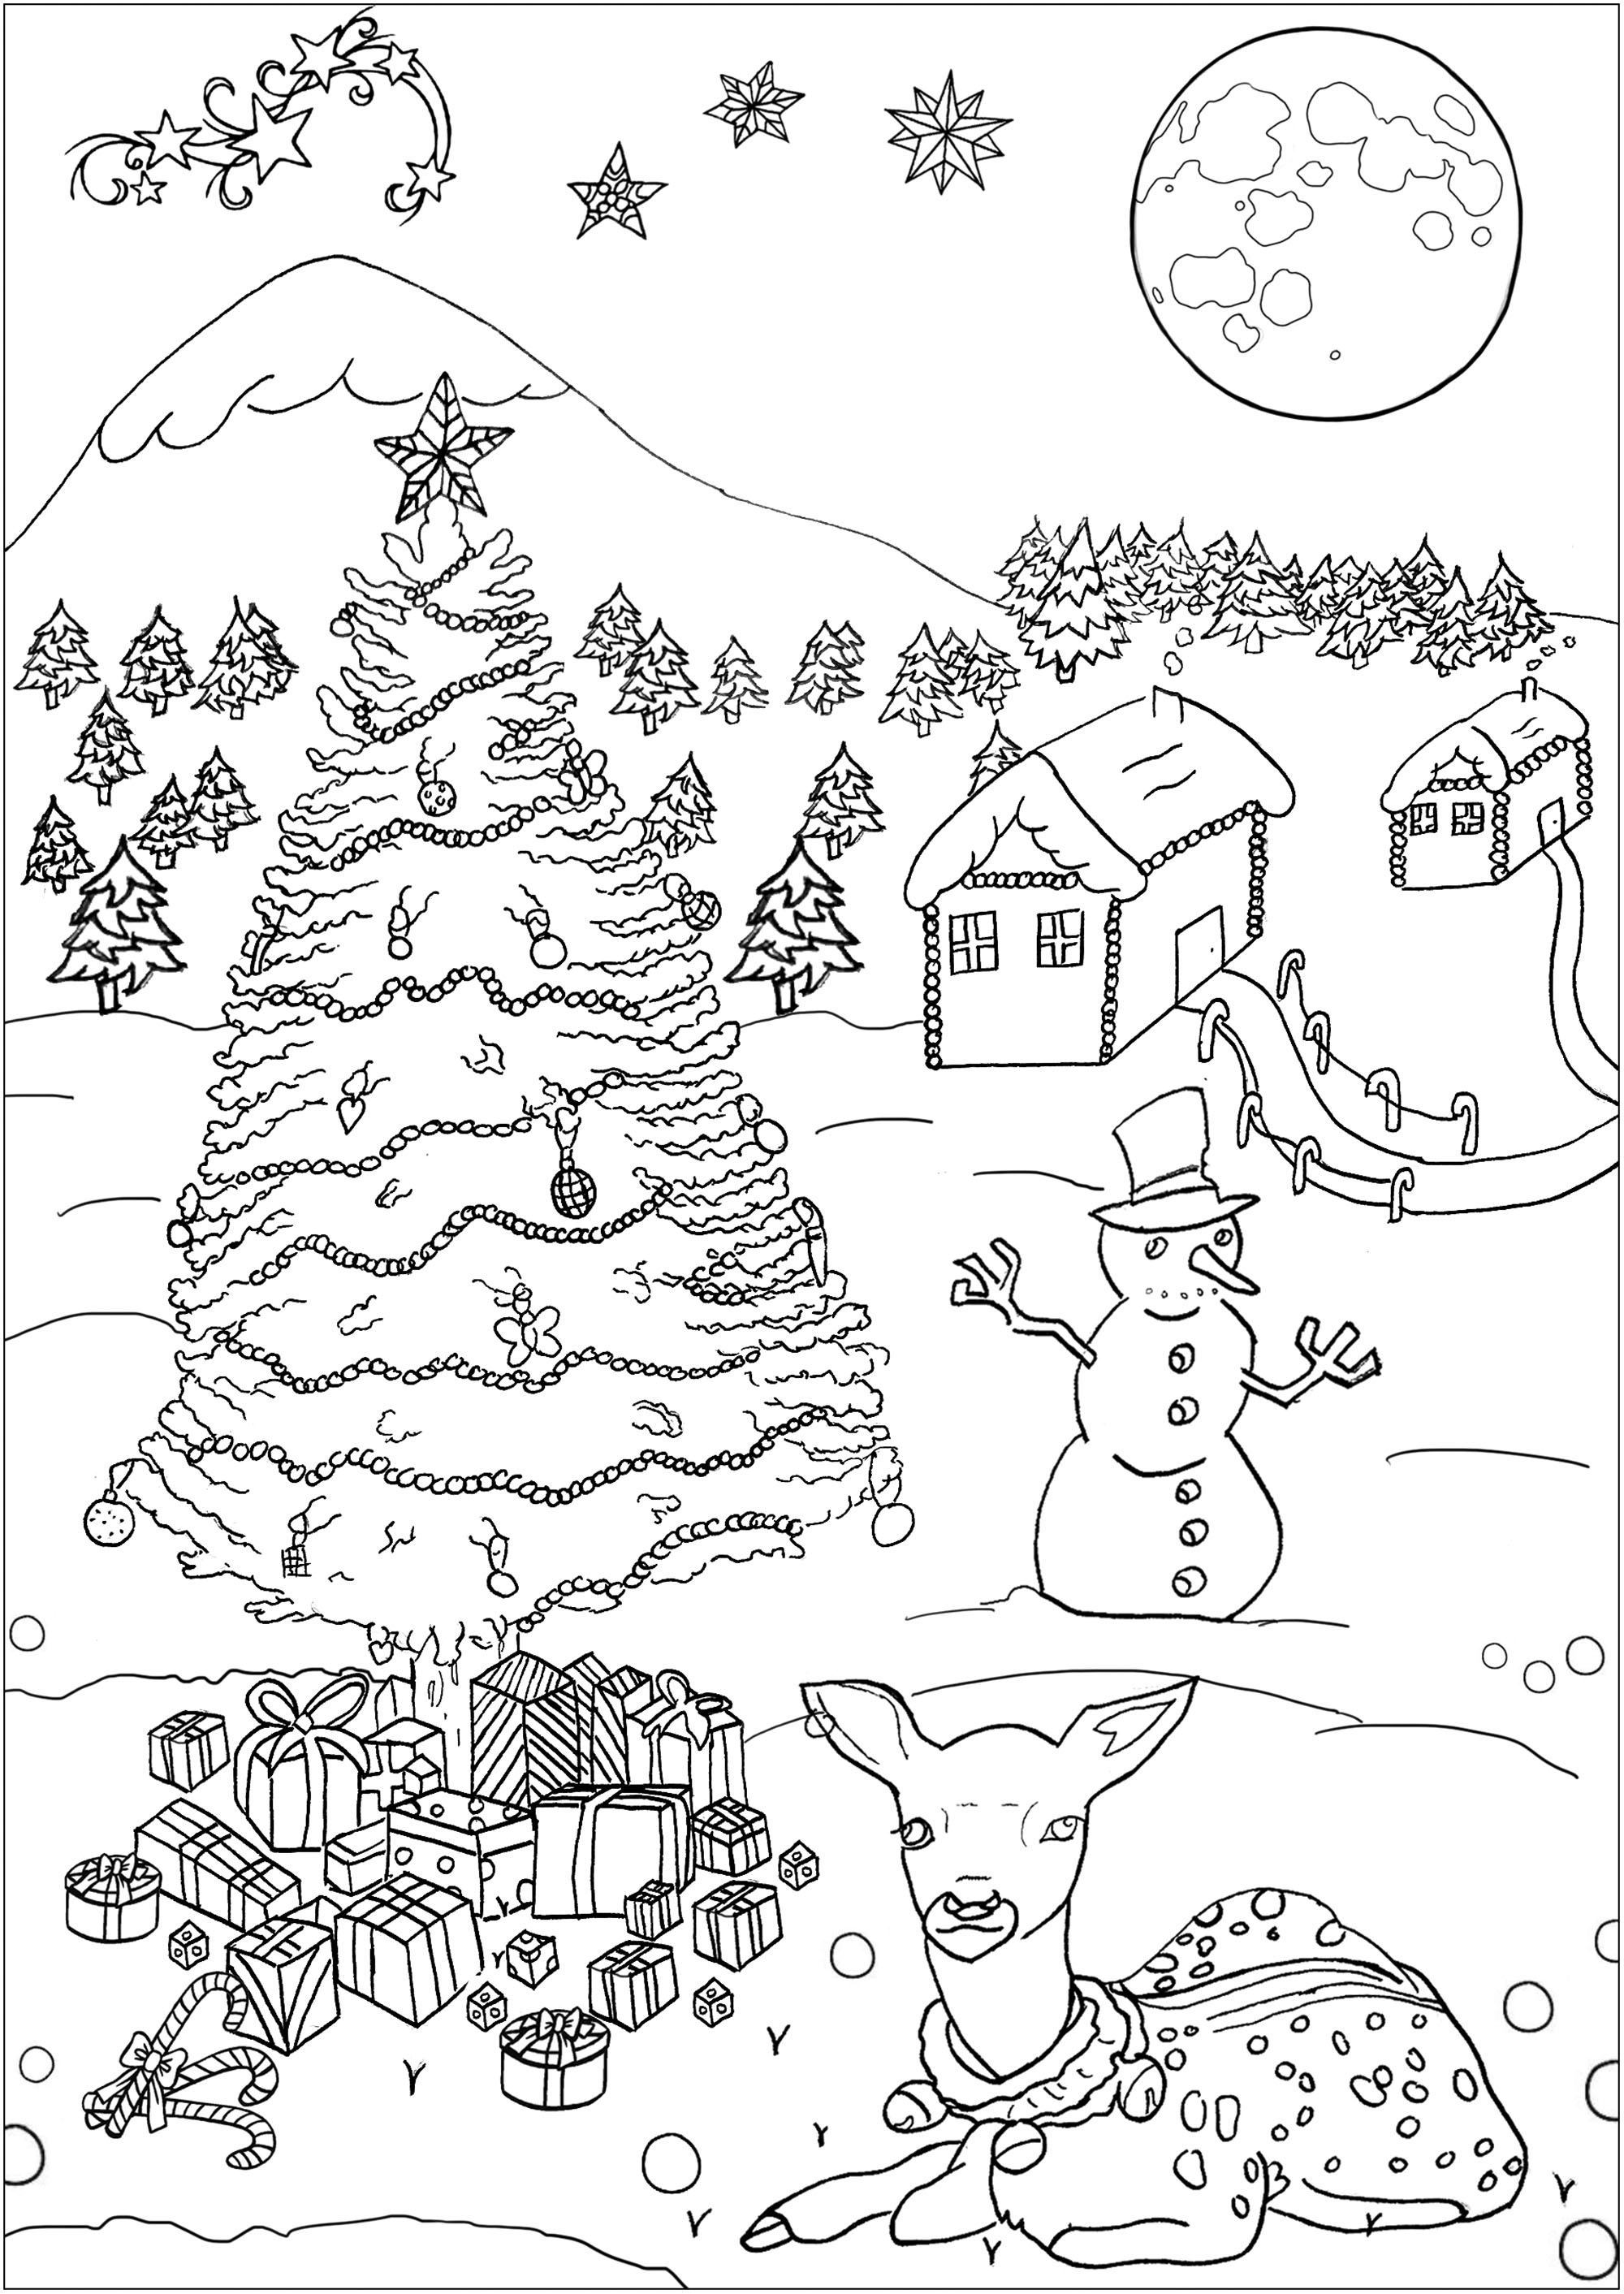 Weihnachten Malvorlage, mit einer hübschen Hütte, ein Baum, ein Schneemann, Geschenke und ein niedliches Reh